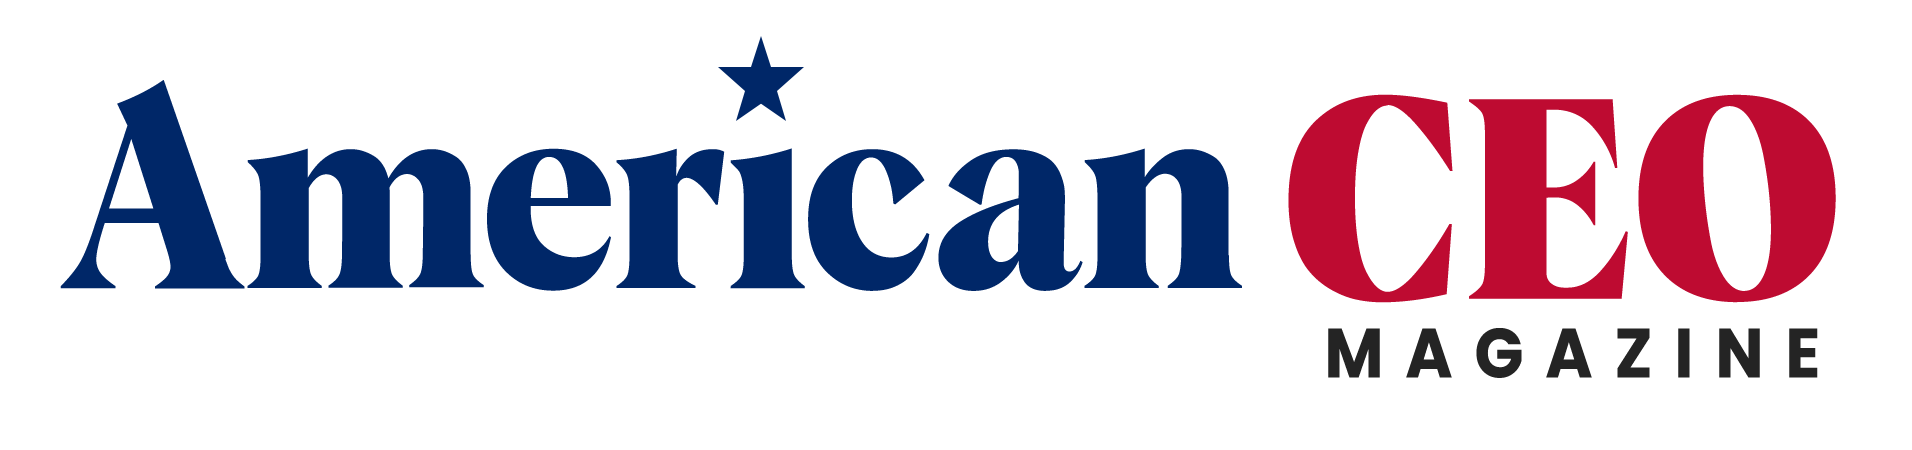 American CEO Logo